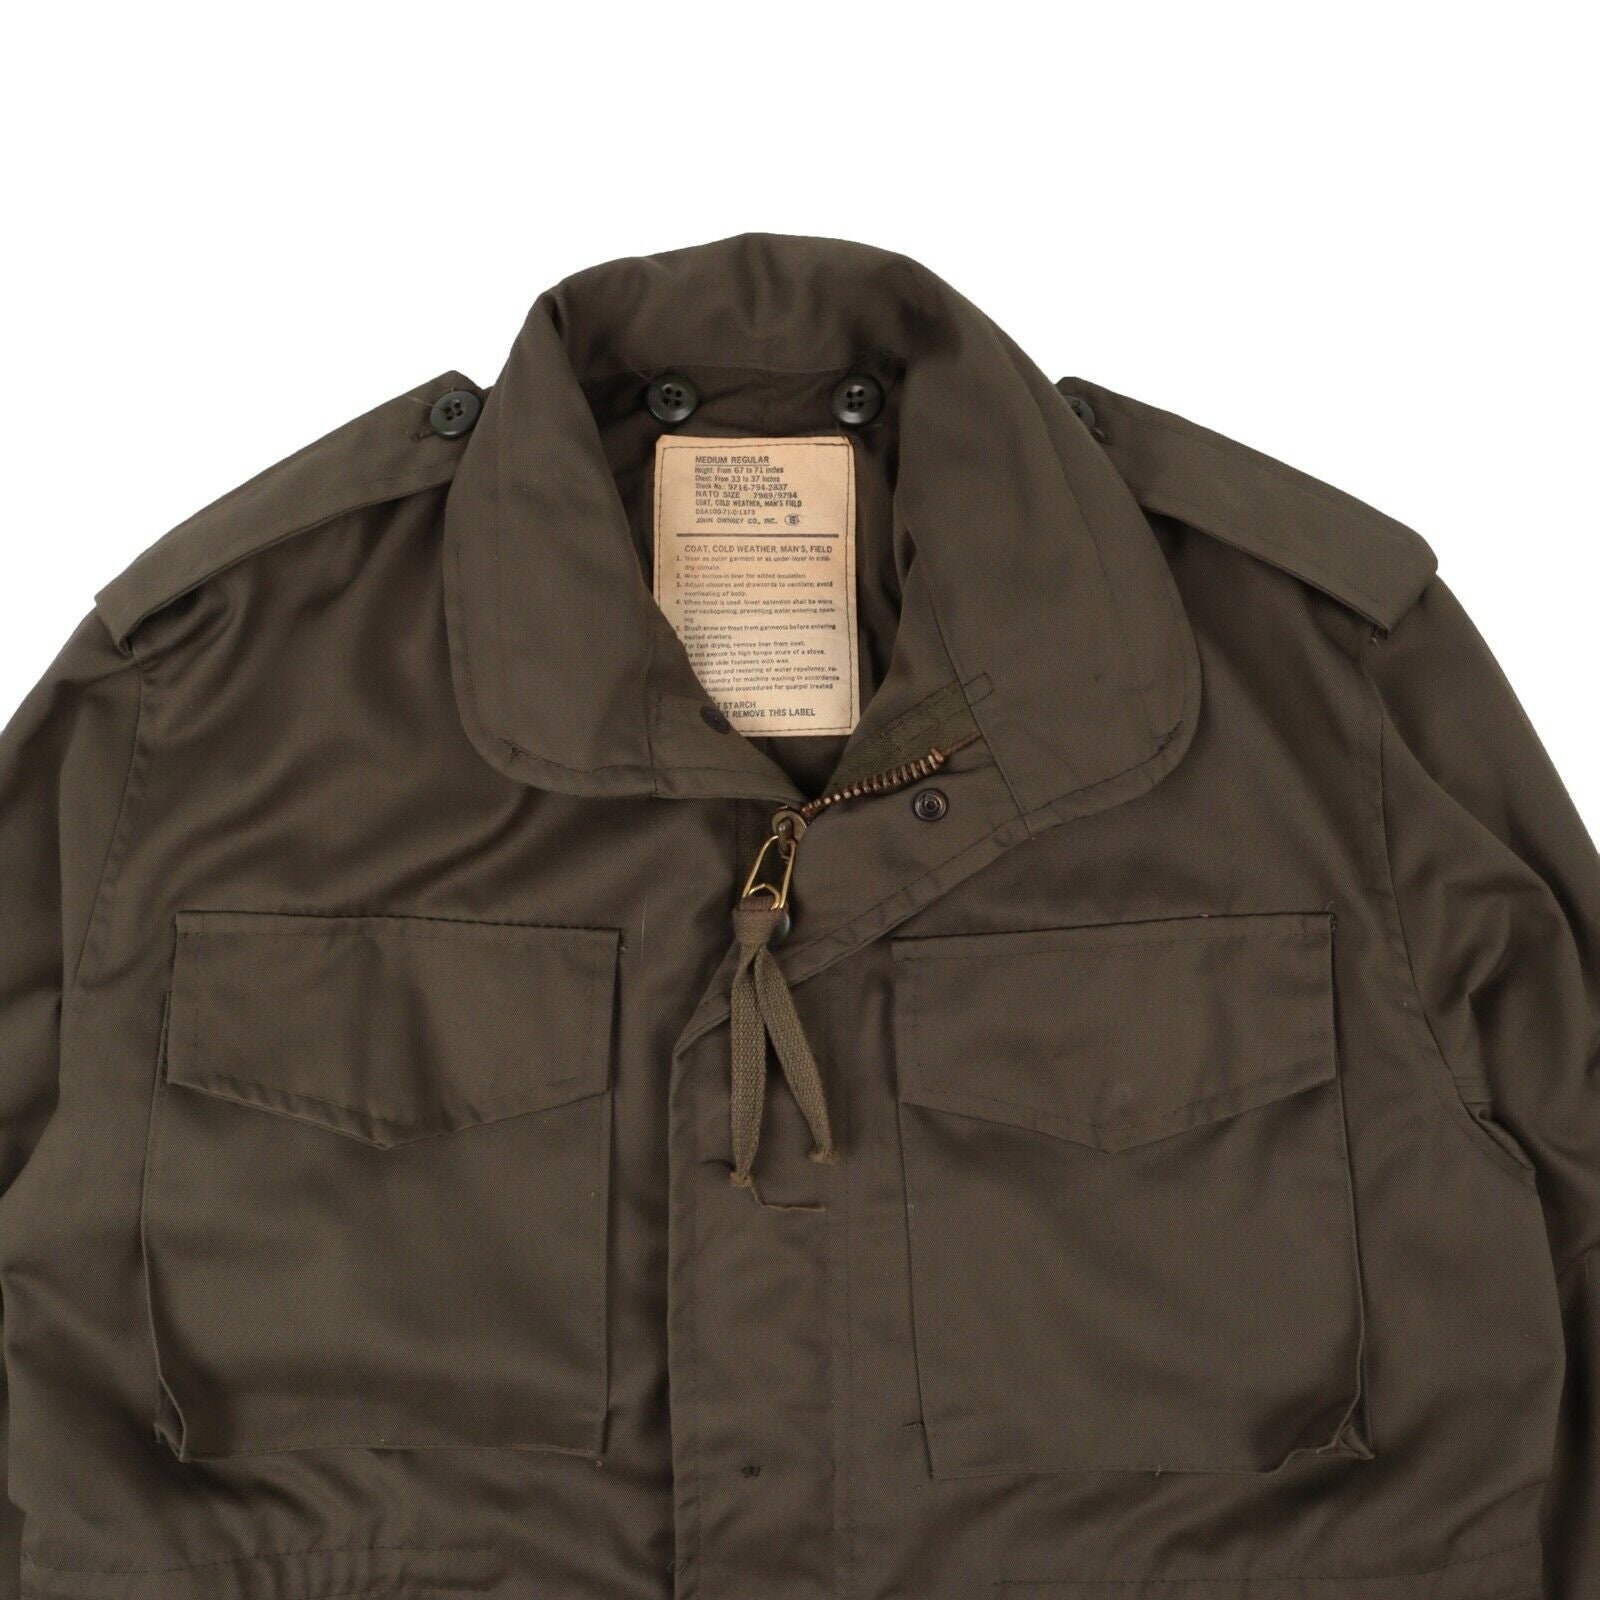 Vintage John Ownbey Co. US Military Field Jacket Men … - Gem